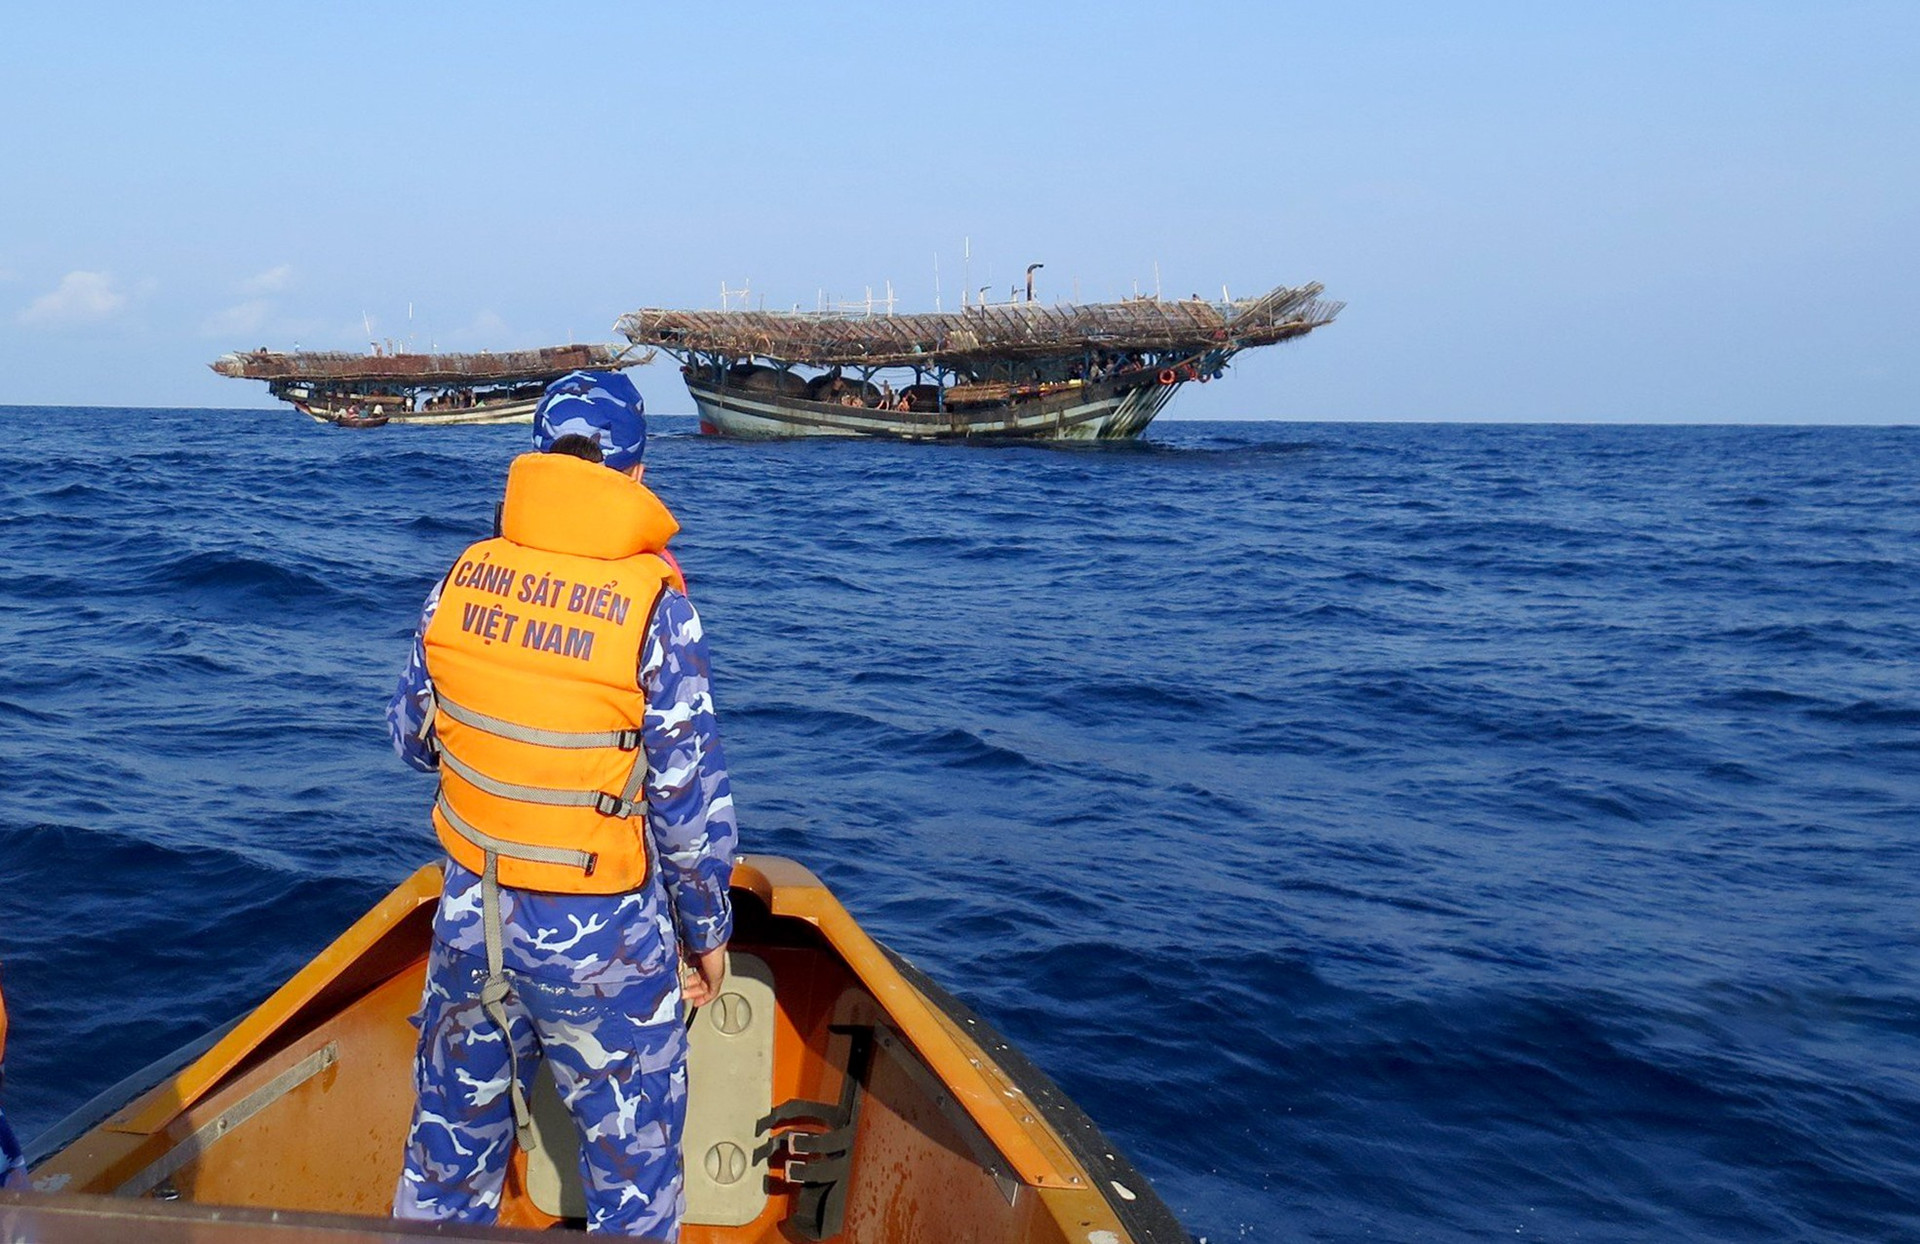 Vị trí ngư dân mất tích có sóng lừng ảnh hưởng đến công tác tìm kiếm của các lực lượng. Ảnh: CSB